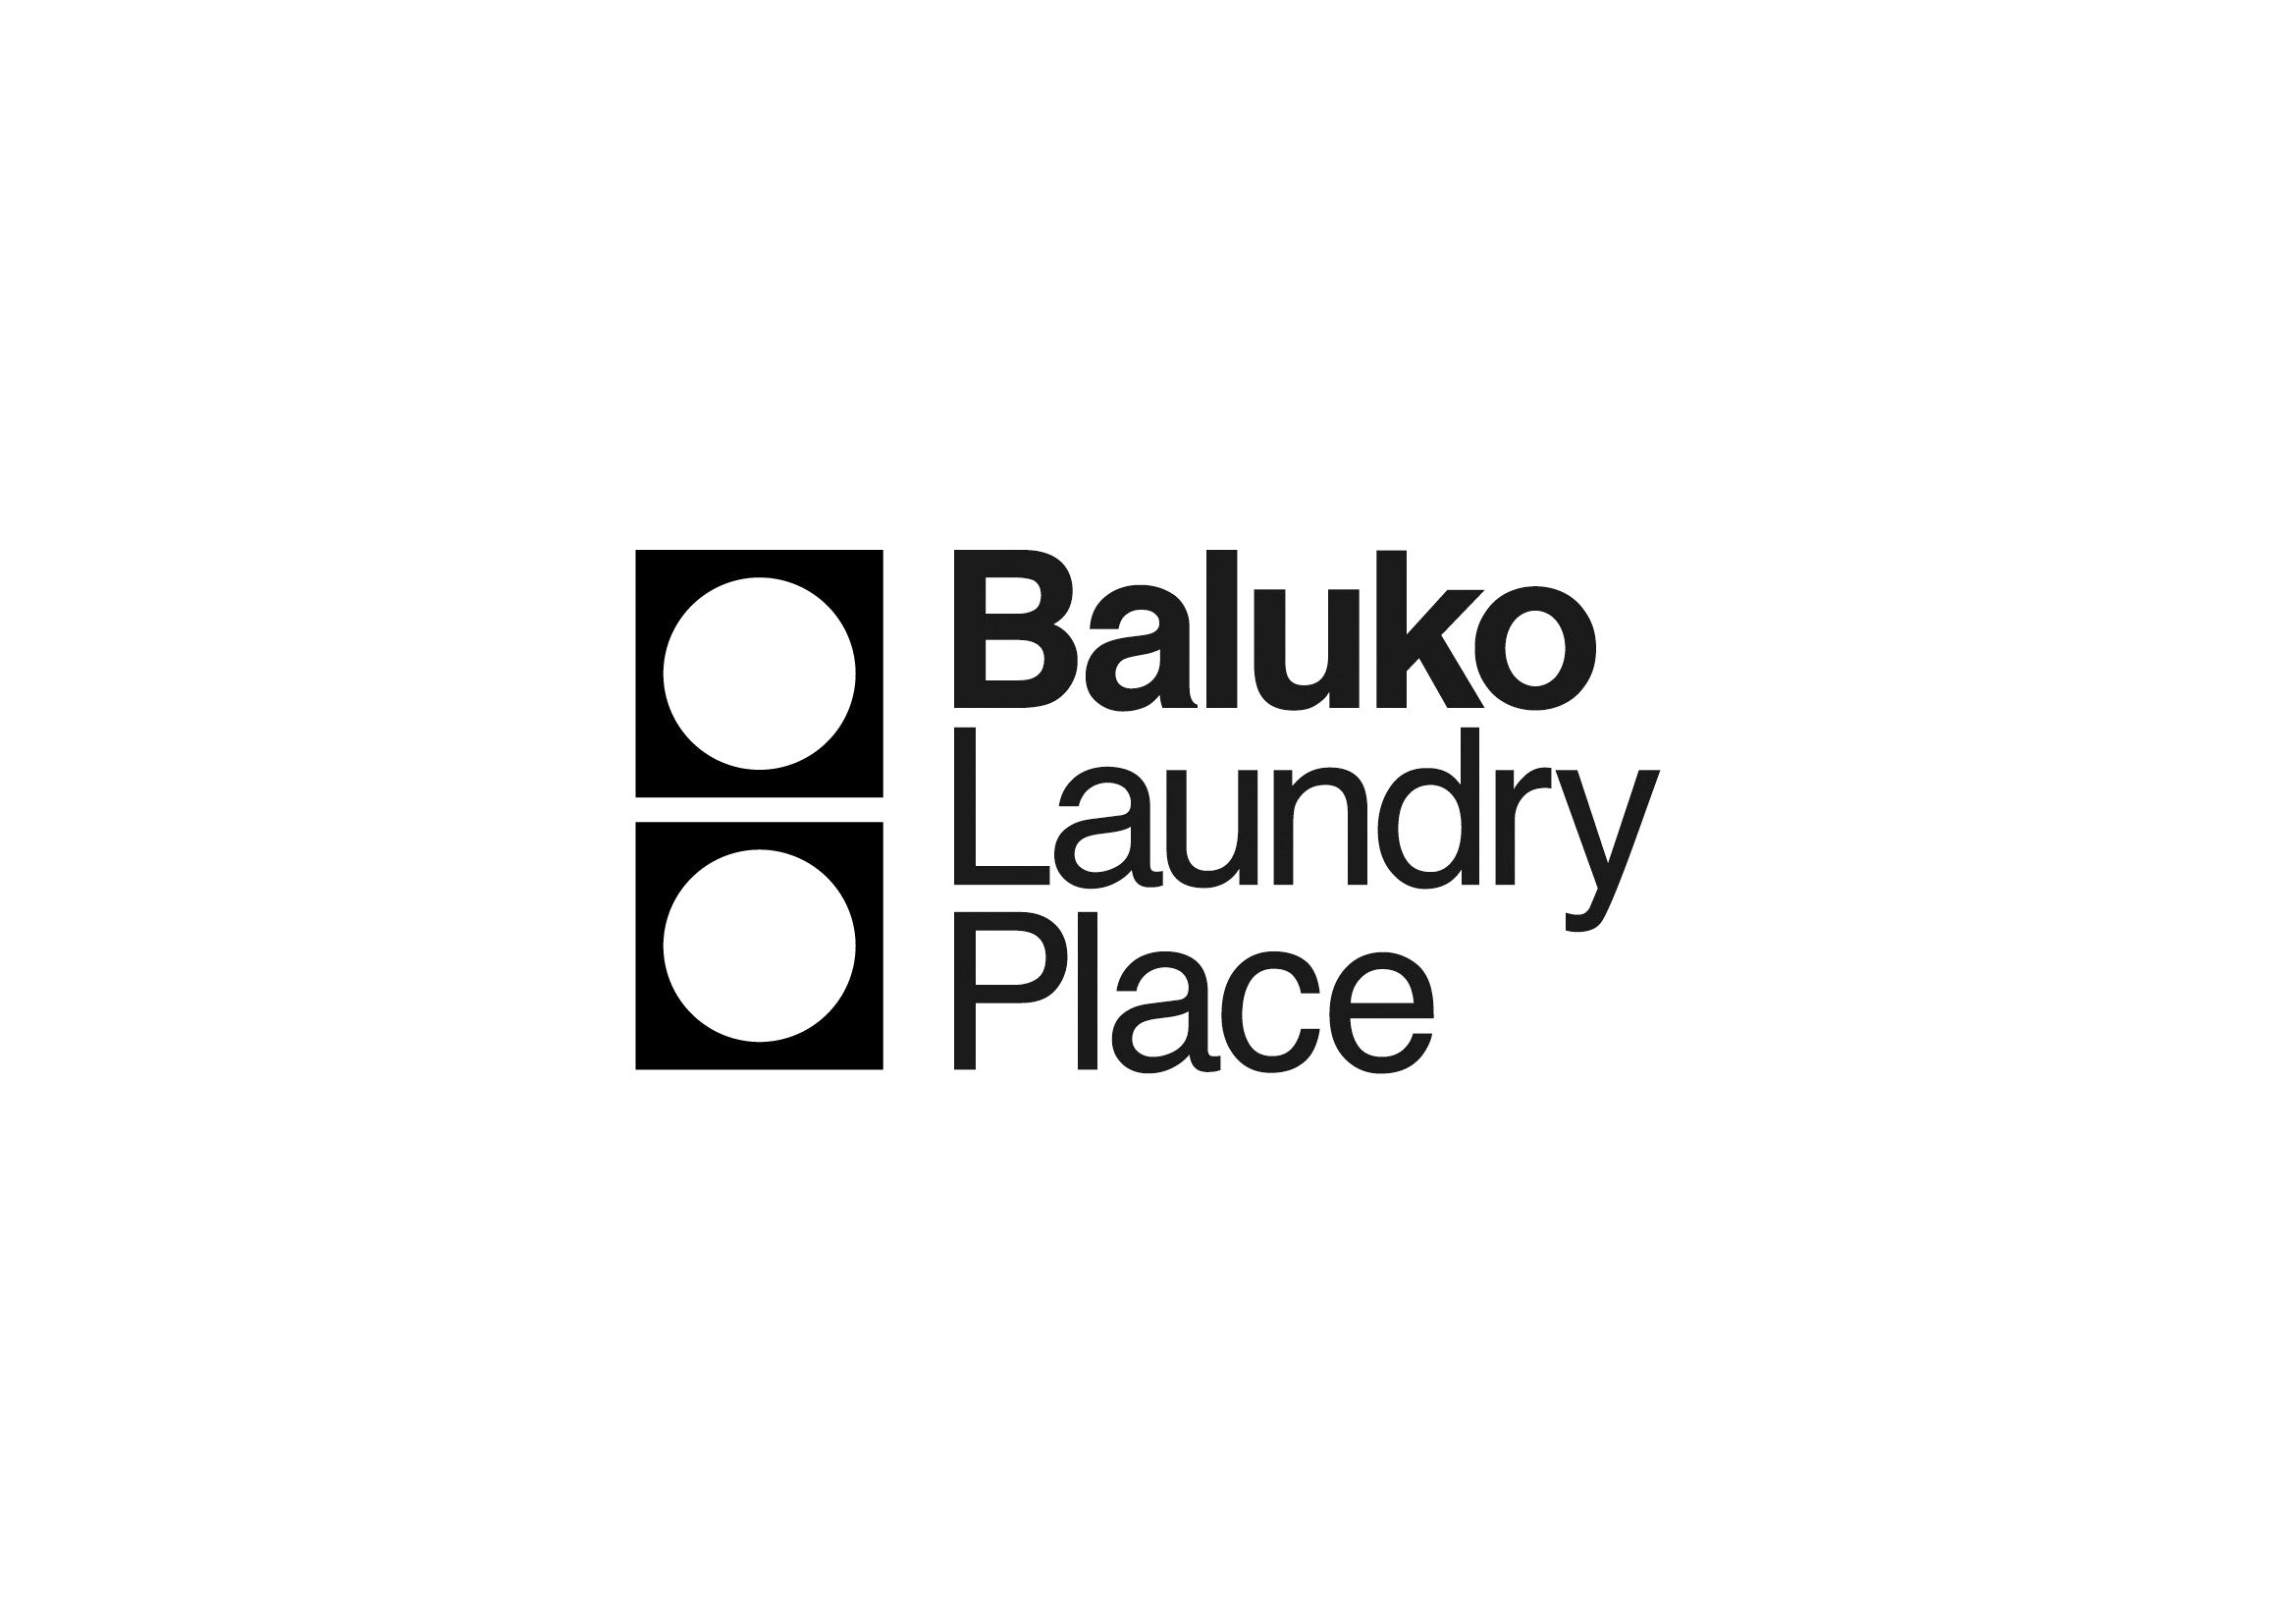 Baluko Laundry Place 公式アカウント
毎日の「洗濯」という行為を楽しくすることを目的とした、新しいスタイルのランドリーです。

サービスについてのお問合せは、各店舗またはコールセンターまでご連絡ください。